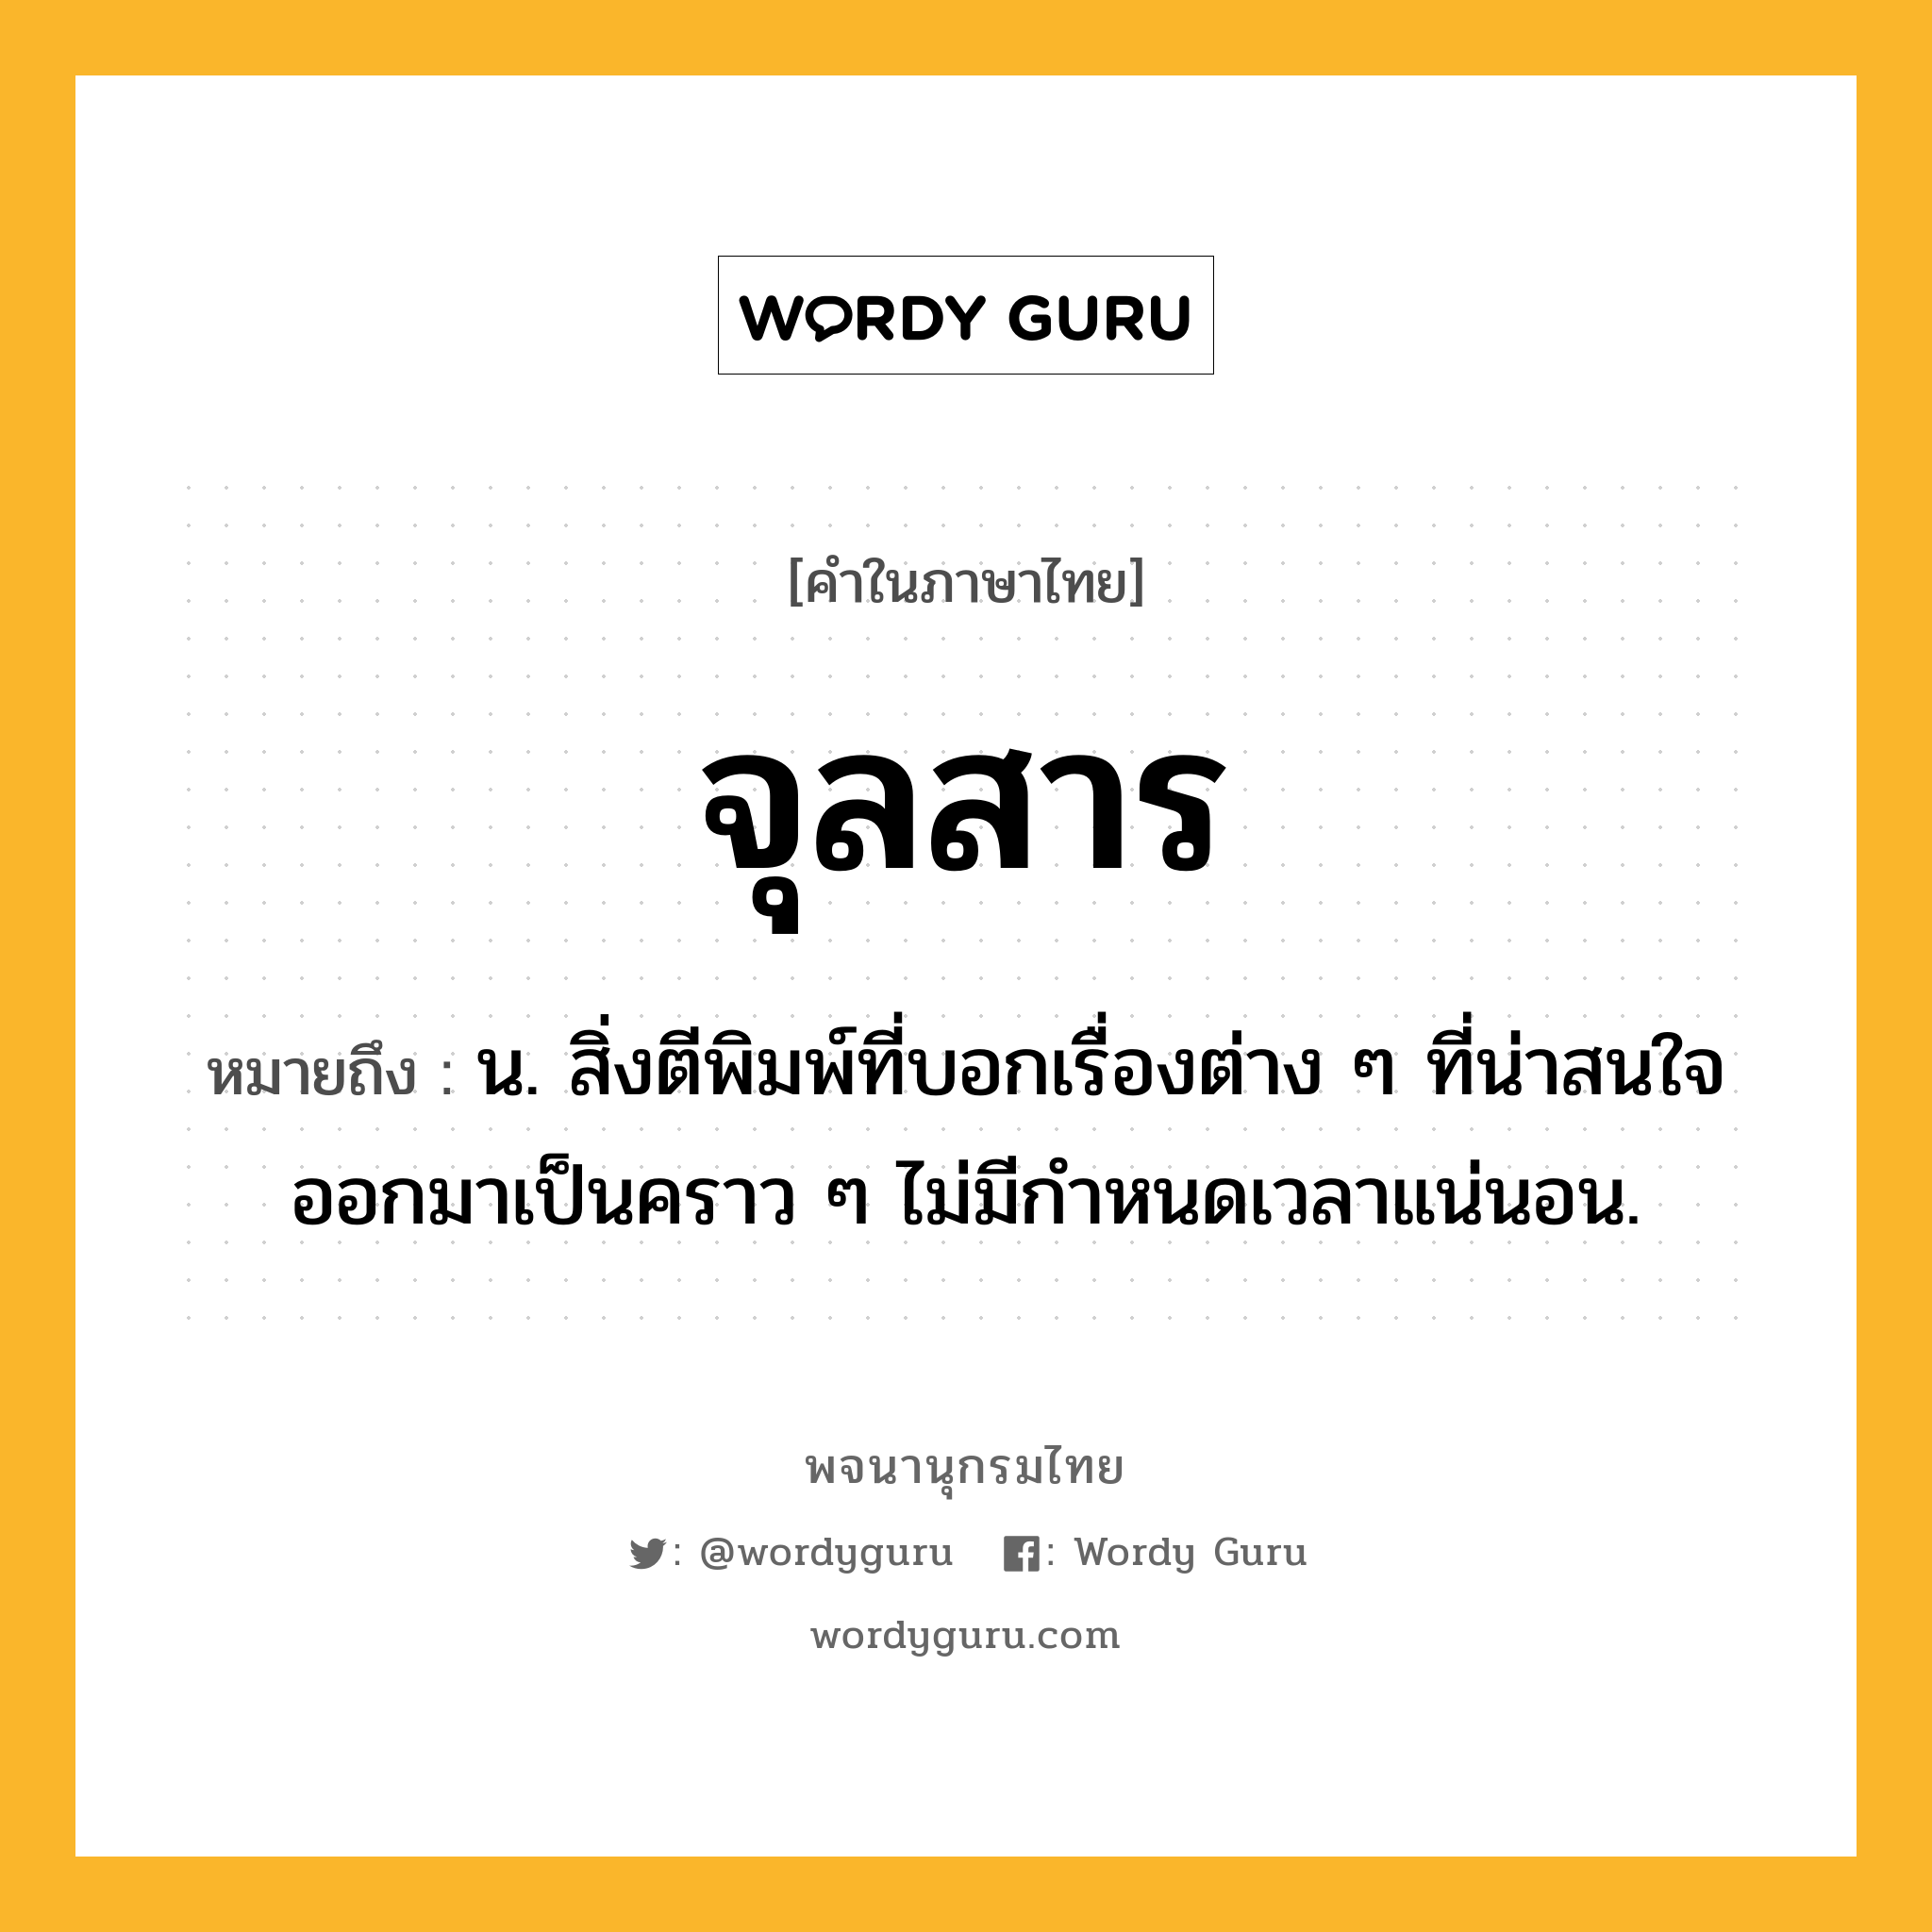 จุลสาร หมายถึงอะไร?, คำในภาษาไทย จุลสาร หมายถึง น. สิ่งตีพิมพ์ที่บอกเรื่องต่าง ๆ ที่น่าสนใจ ออกมาเป็นคราว ๆ ไม่มีกําหนดเวลาแน่นอน.